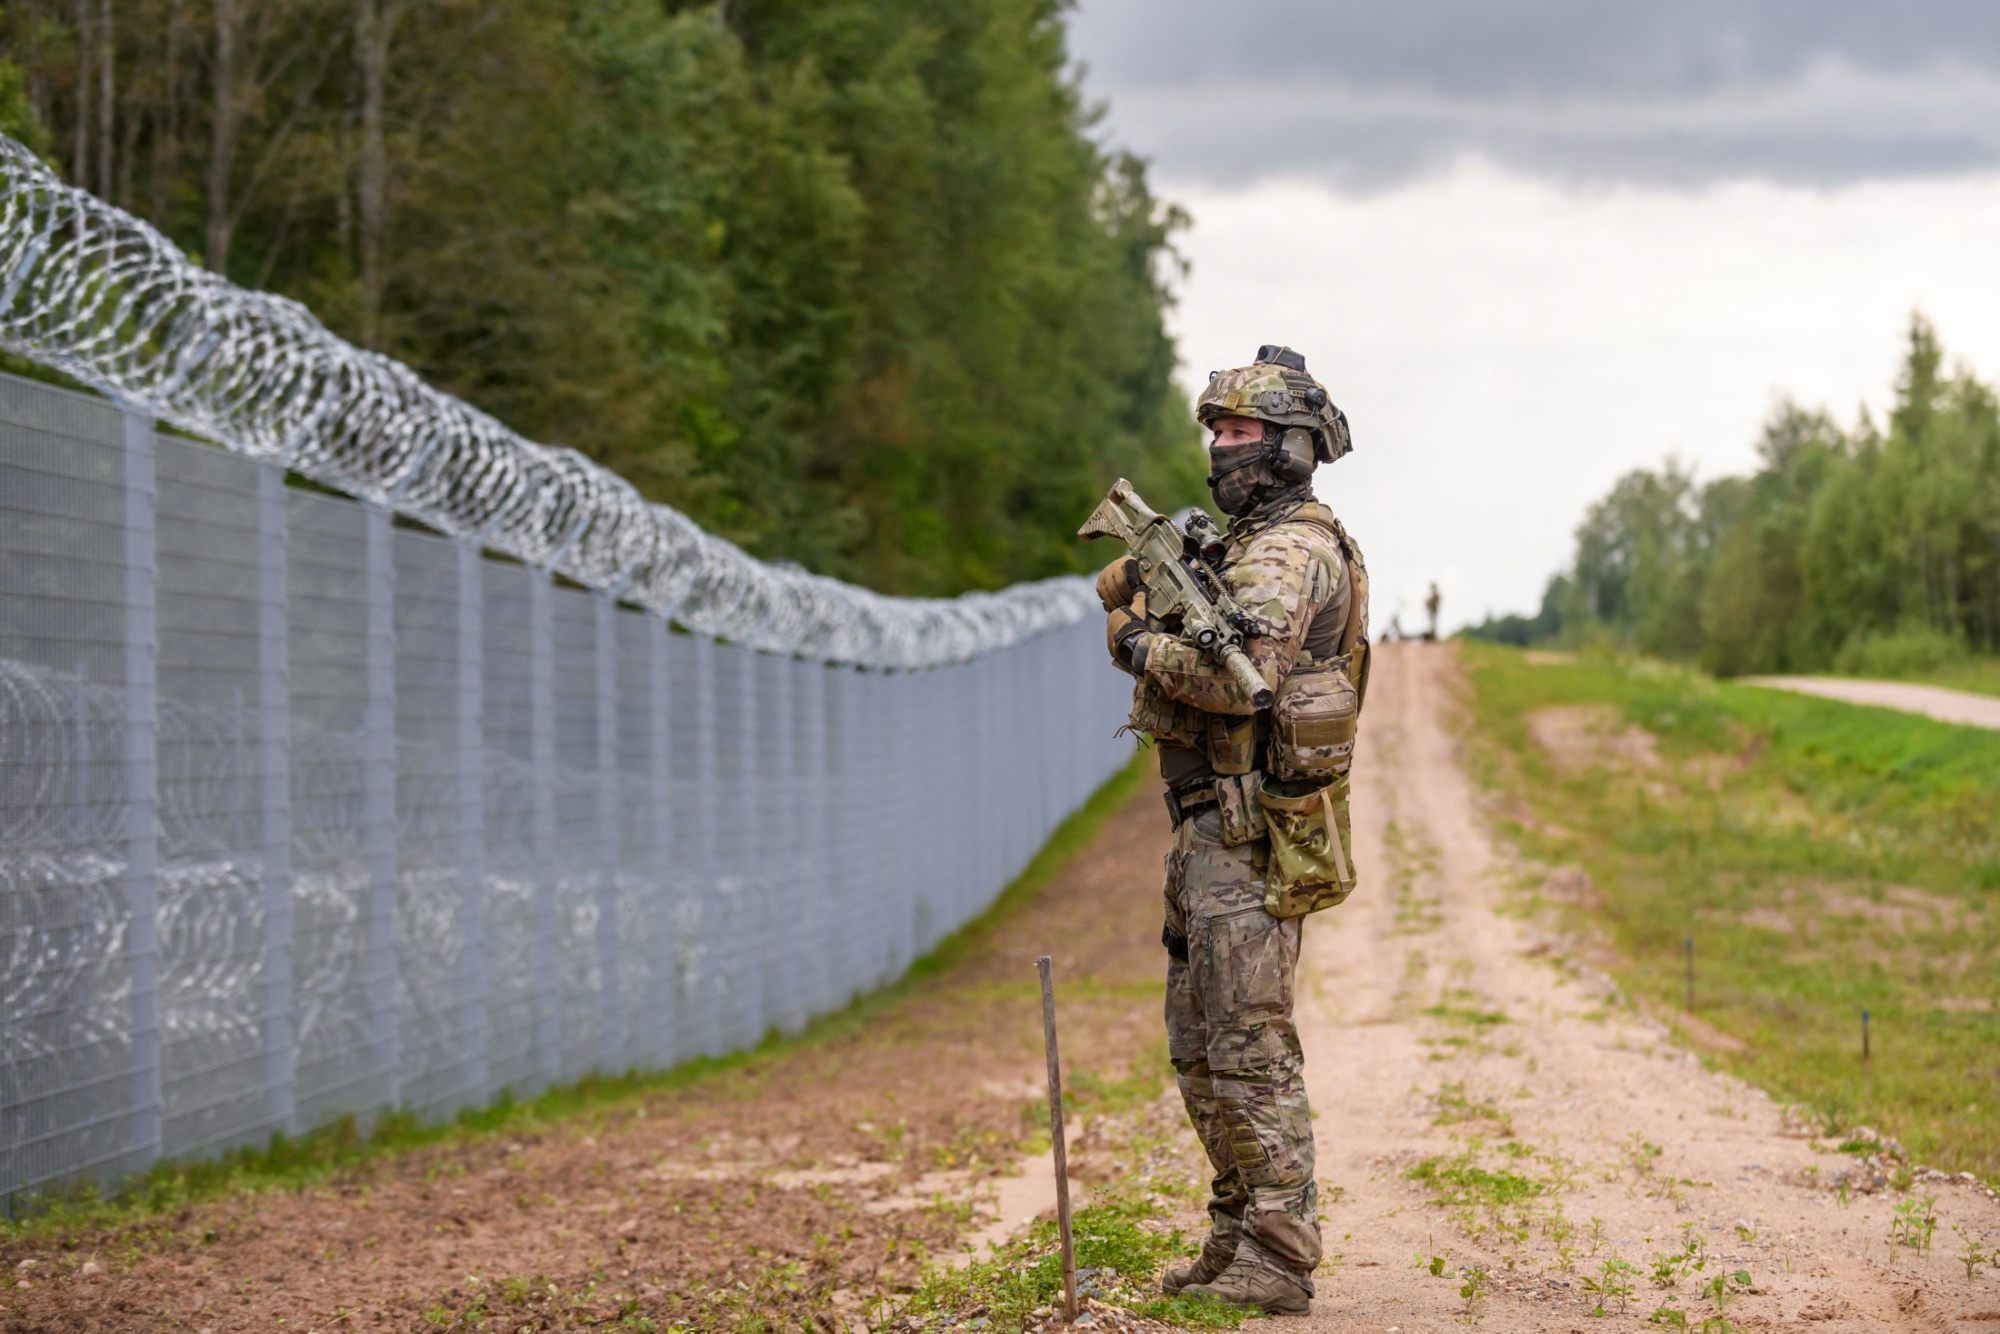 Latvia Tightens Border Security as Belarus Crossings Rise - Bloomberg